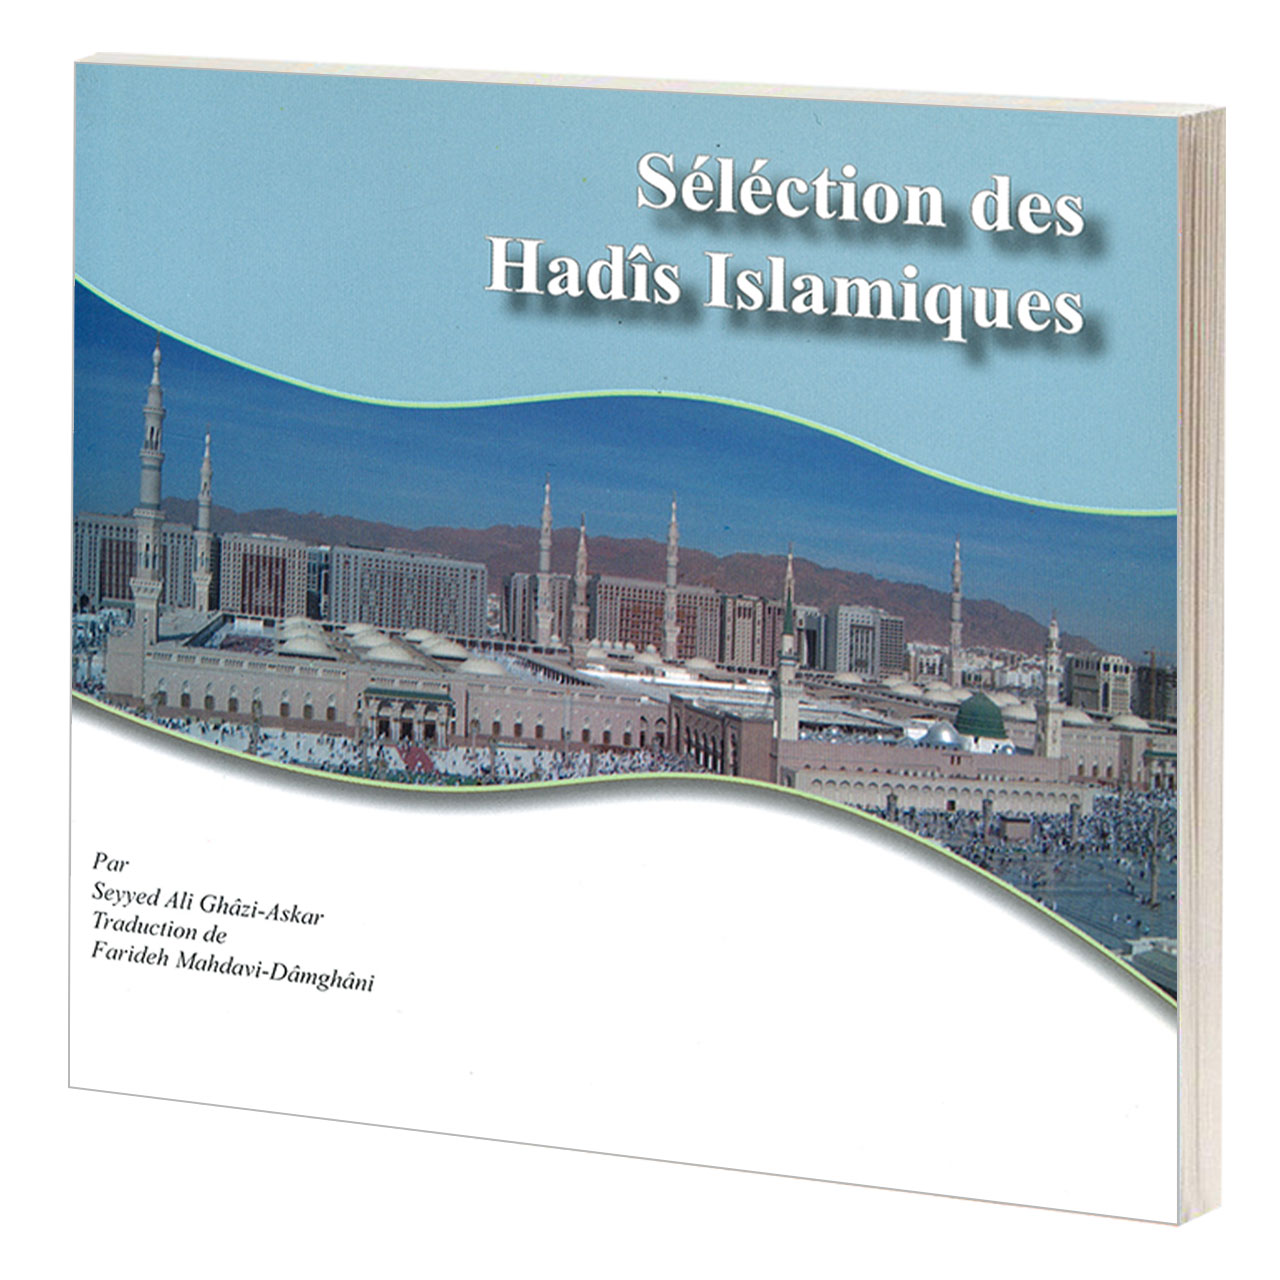 کتاب Selection des Hadis Islamiques اثر سید علی قاضی عسکر نشر مشعر